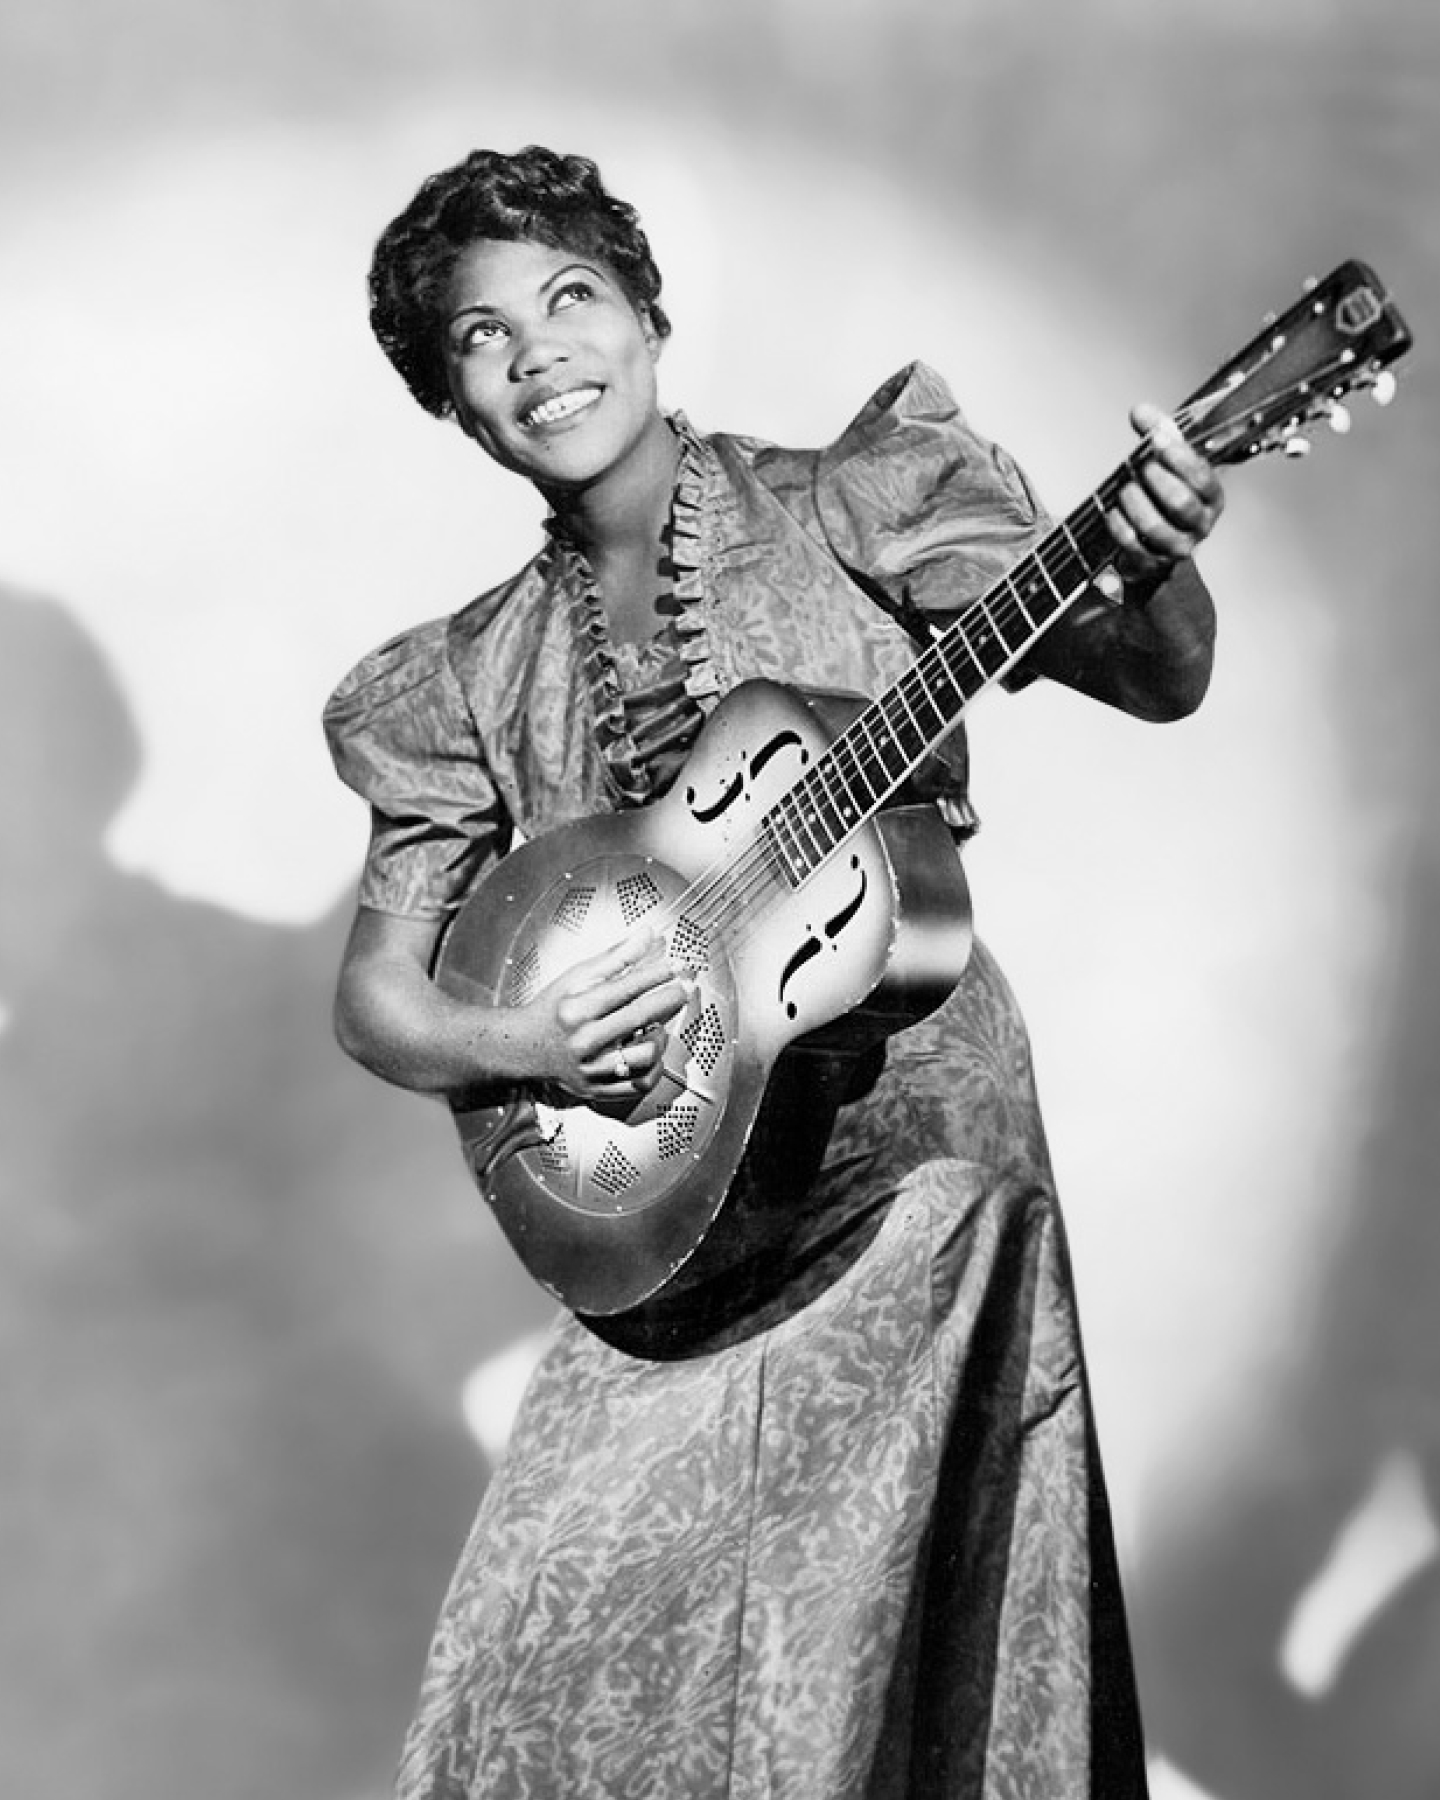 リゾネーター・ギターを抱え、フリルのついたブラウスと柄のワンピースを着た笑顔の女性のモノクロ写真。